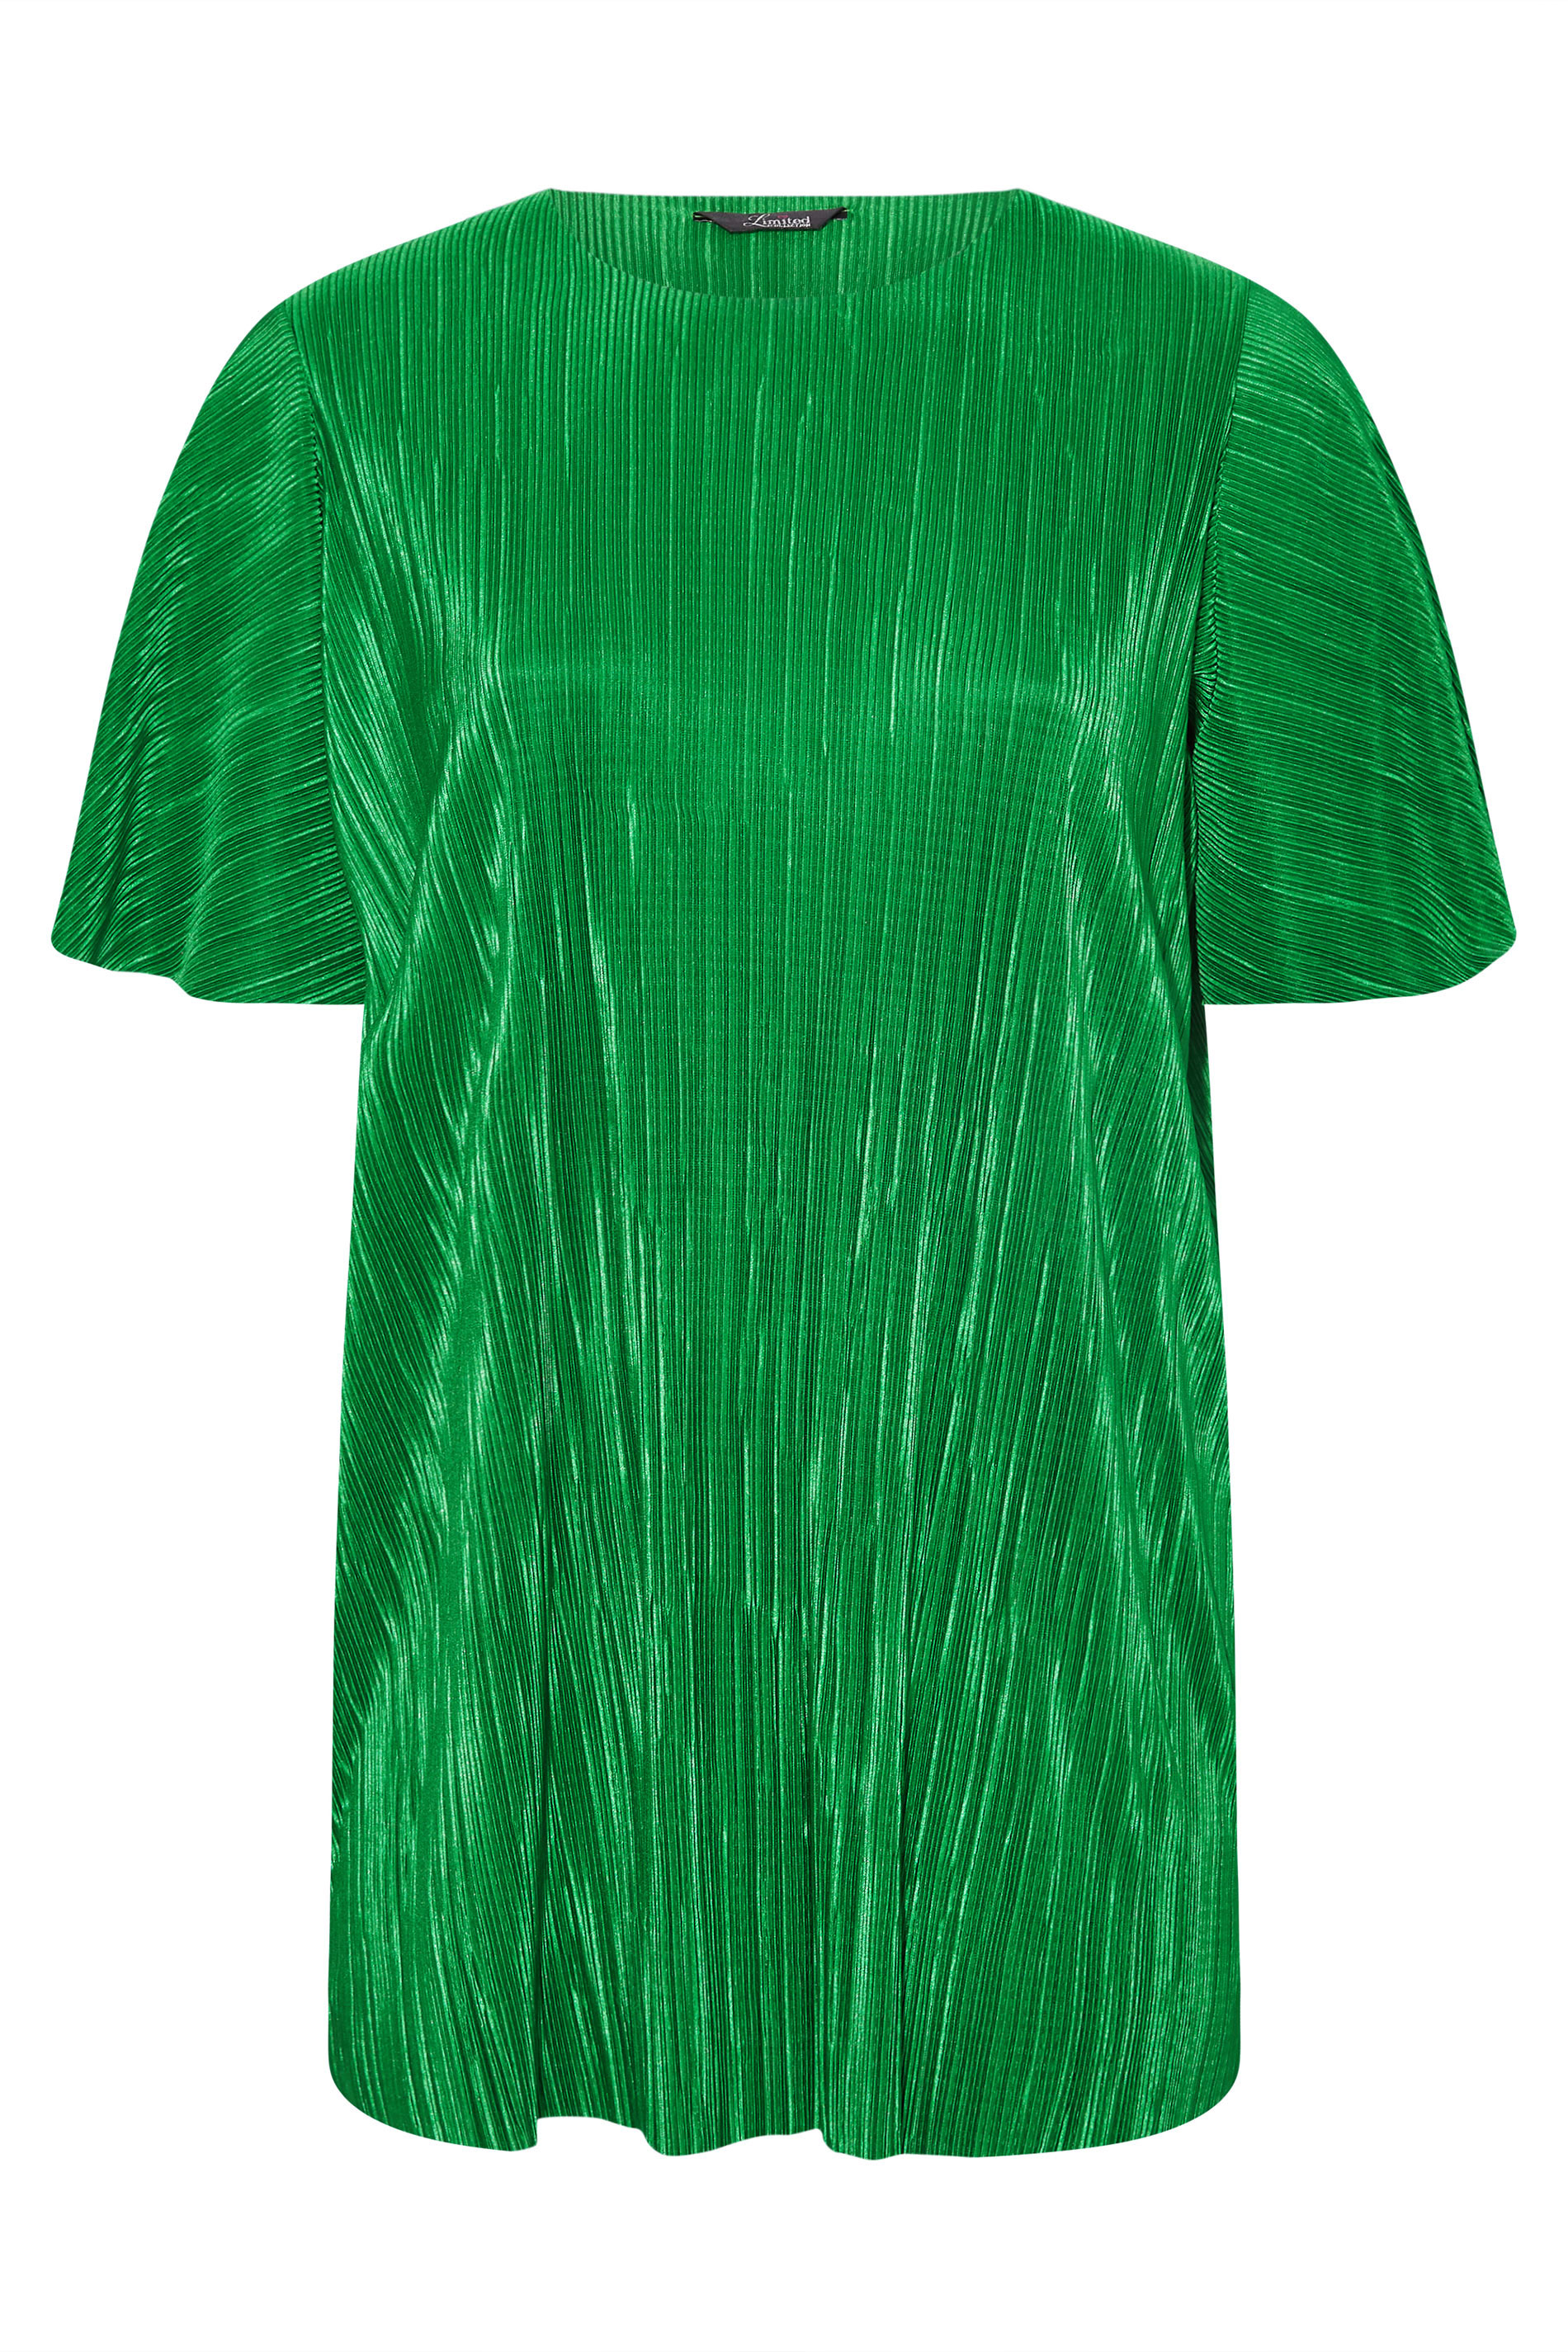 Grande taille  Tops Grande taille  Tops de Soirée | LIMITED COLLECTION - T-Shirt Vert Ample Texture Plissée - SG14196